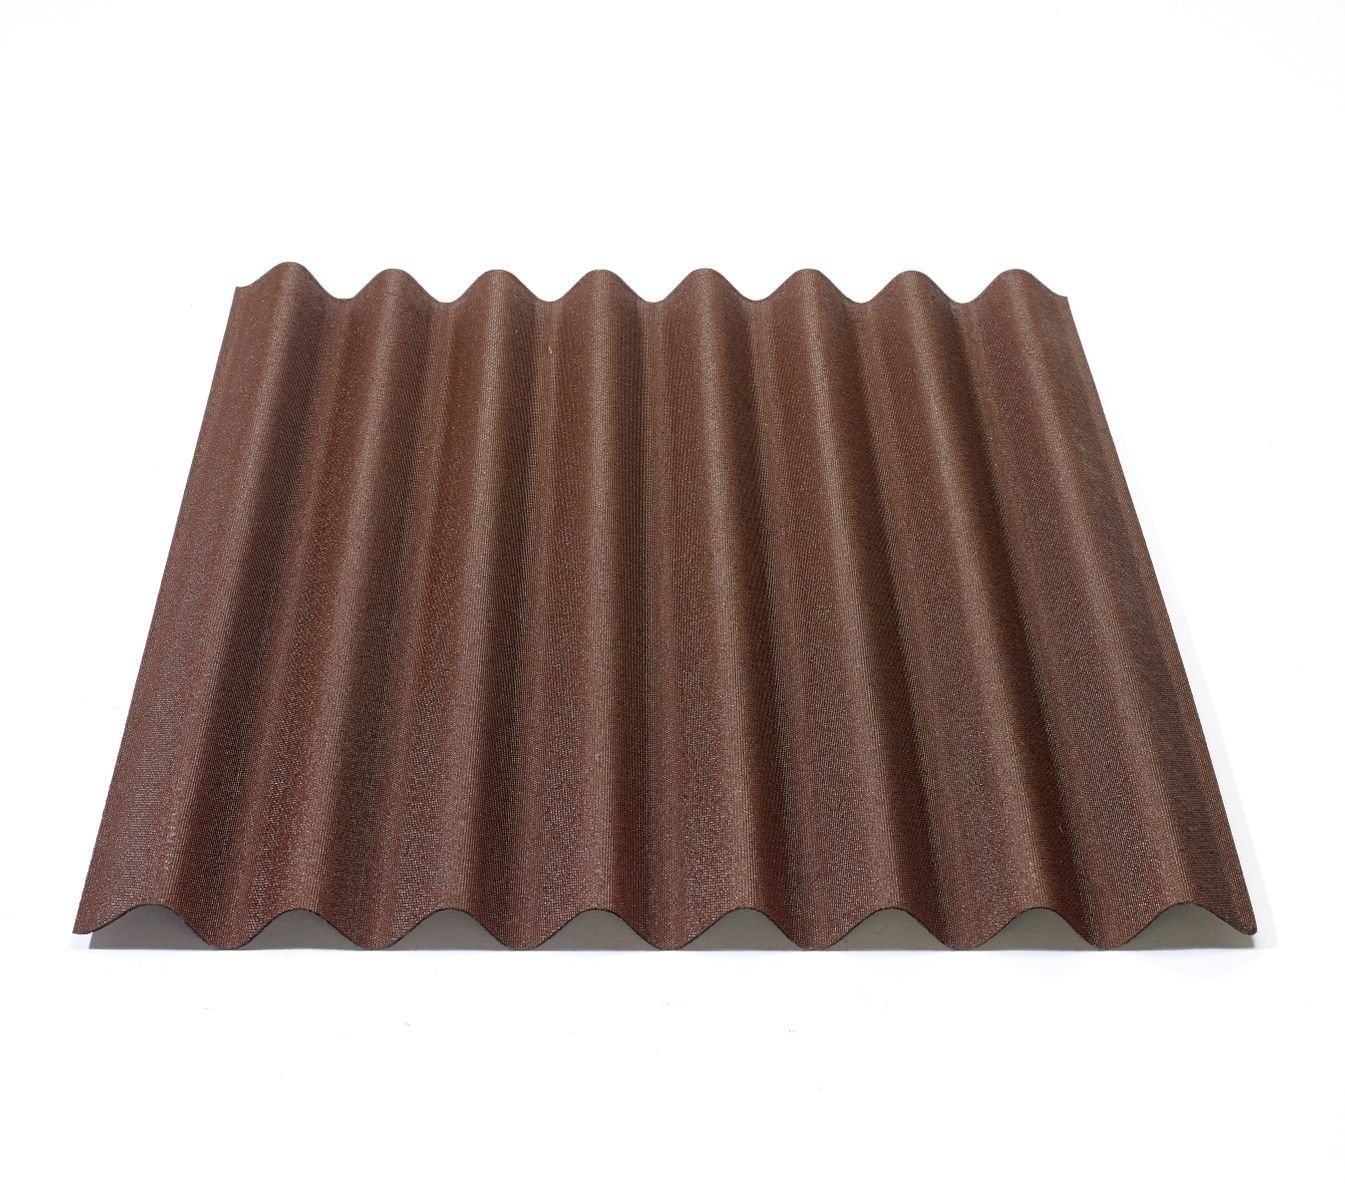 Onduline Dachpappe Onduline Easyline Dachplatte Wandplatte Bitumenwellplatten Wellplatte 1x0,76m - braun, wellig, 0.76 m² pro Paket, (1-St) von Onduline